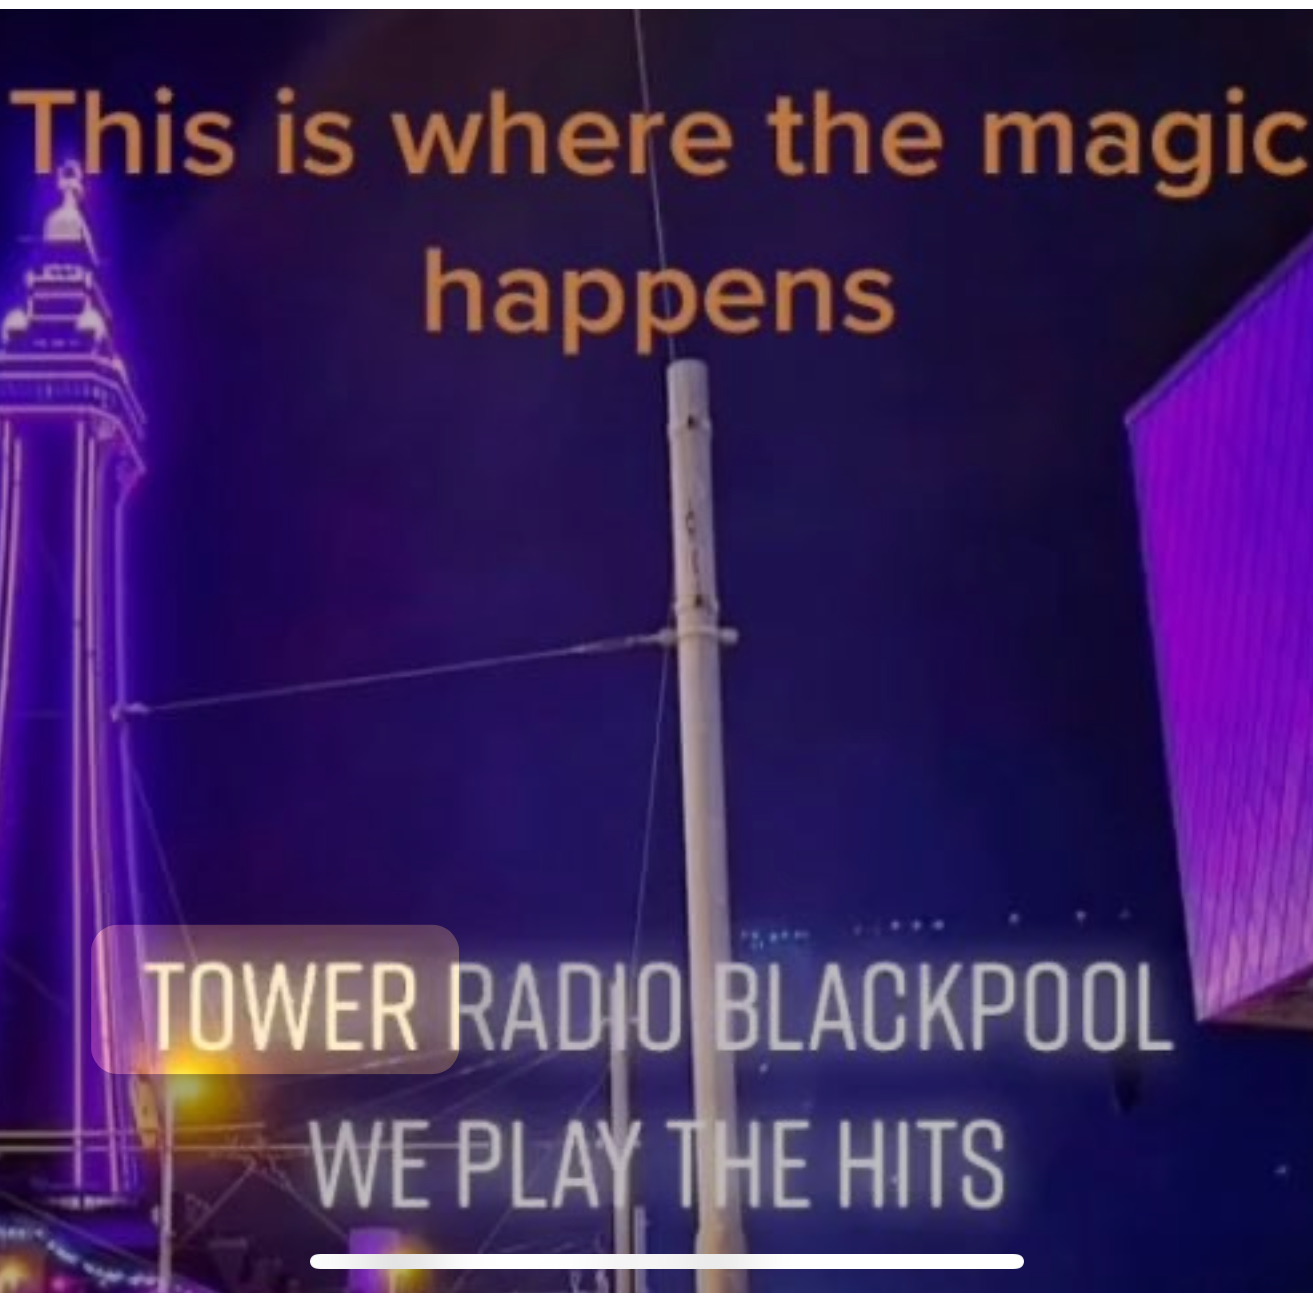 TOWER RADIO BLACKPOOL